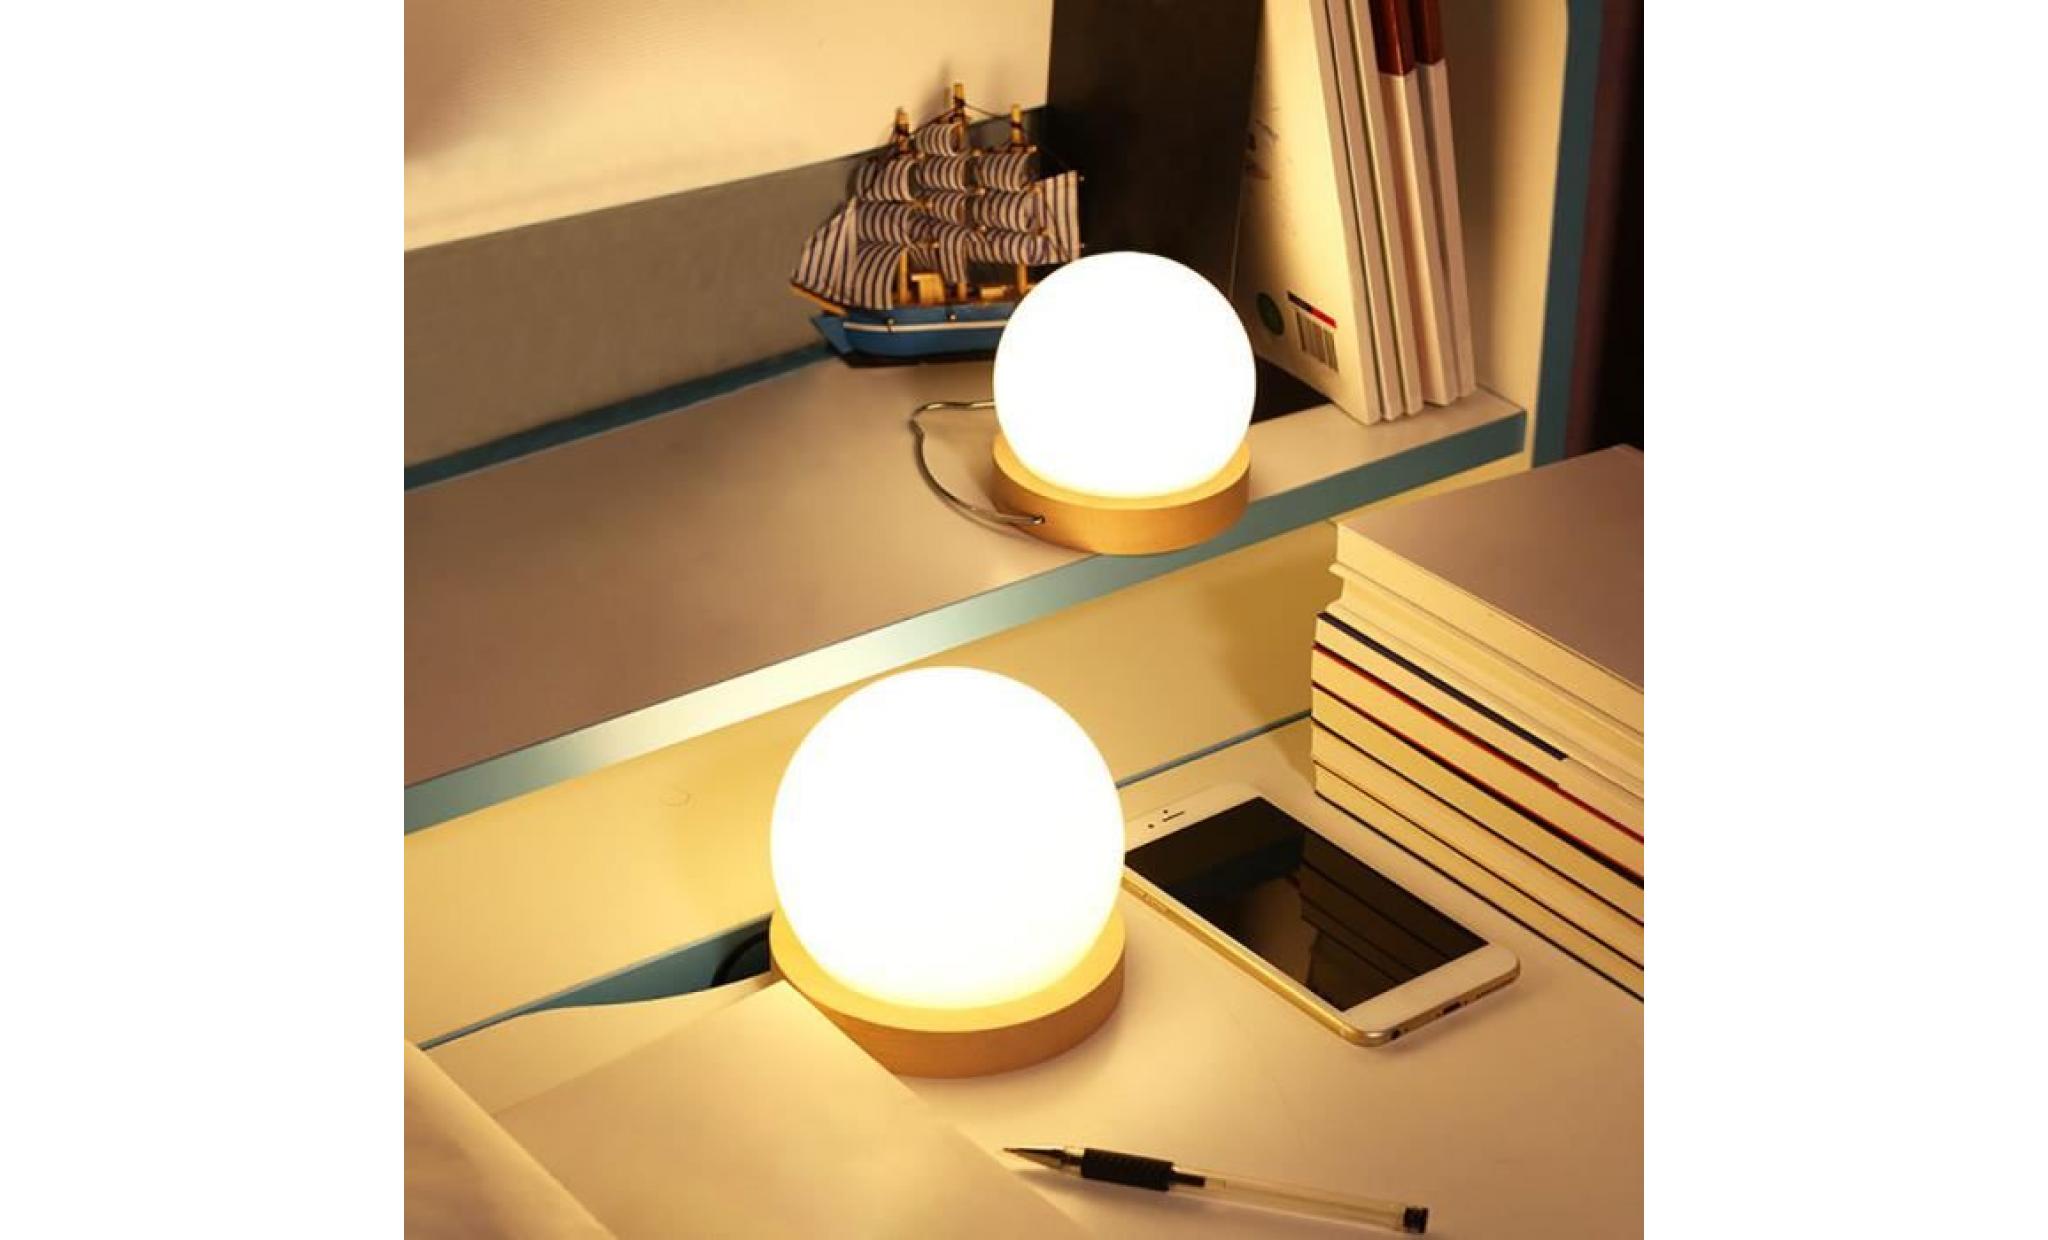 night light ball shaped usb lamp kid's gift home desk 3d led decor 10894